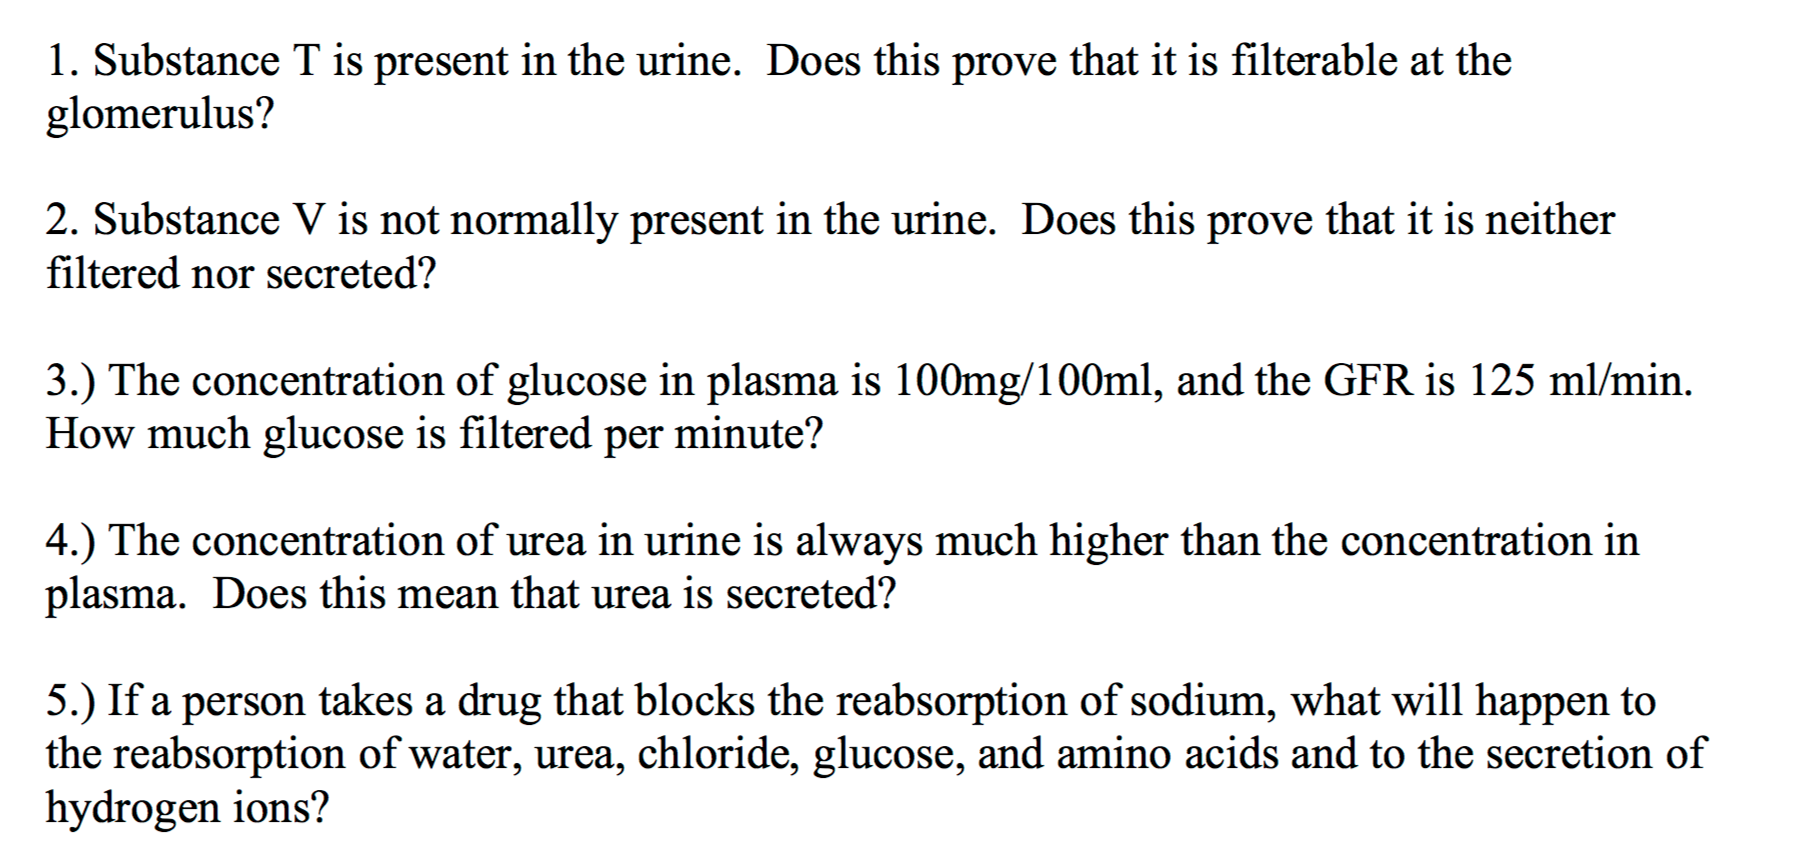 varför finns inte glukos och dessutom aminosyror i urinen